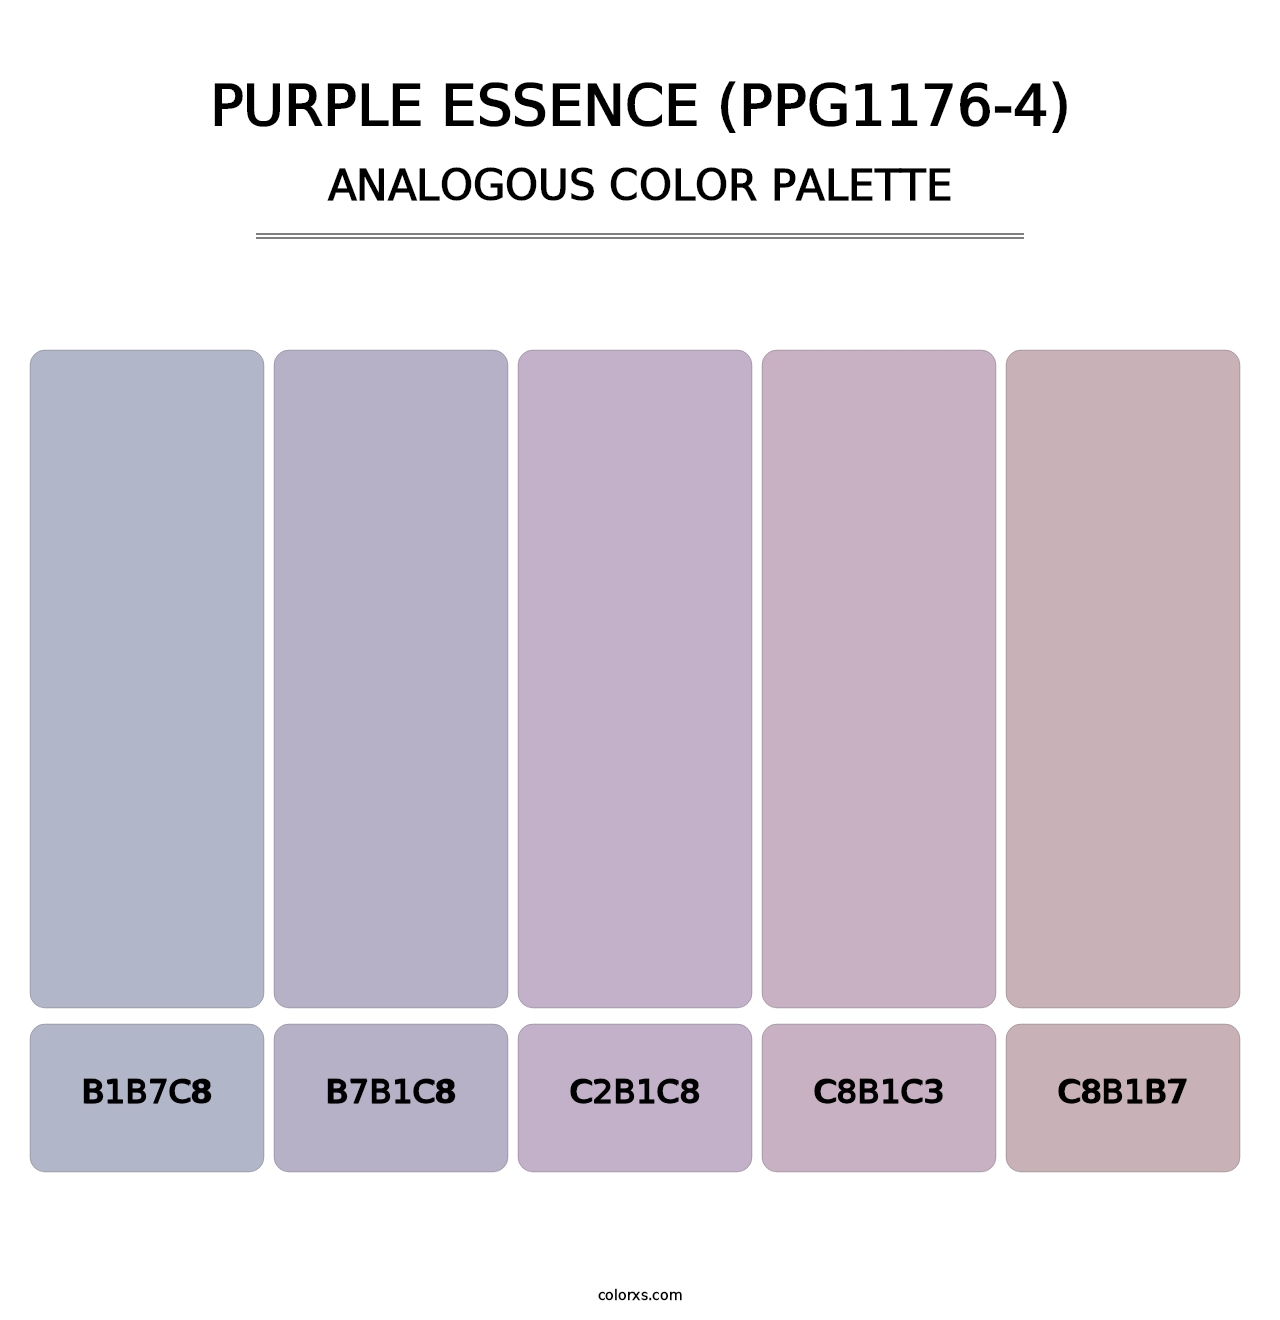 Purple Essence (PPG1176-4) - Analogous Color Palette